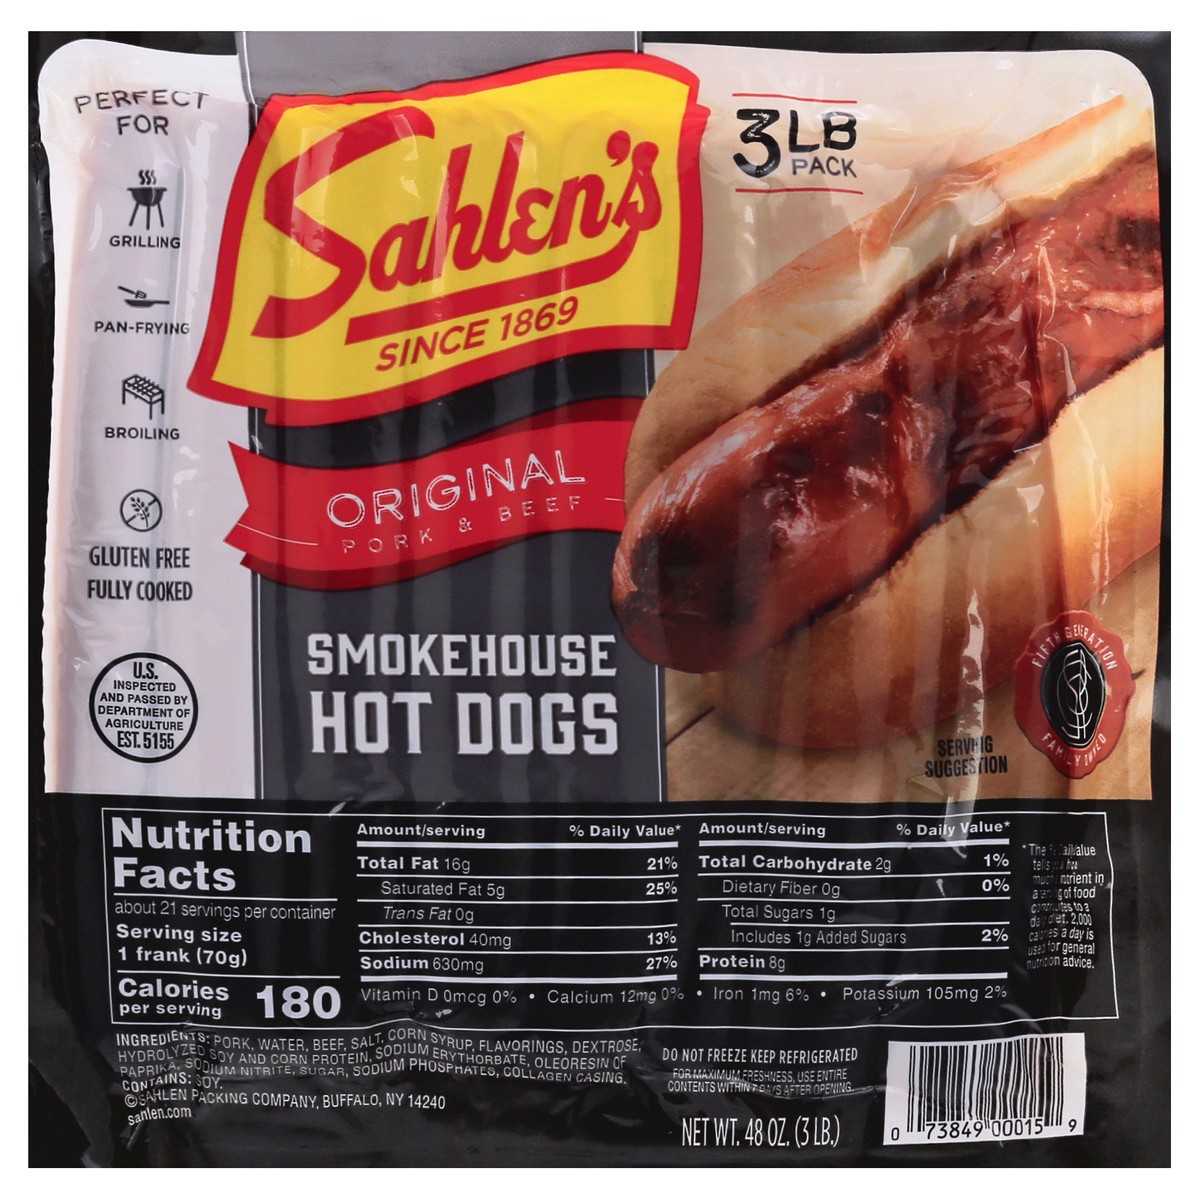 slide 1 of 13, Sahlen's Original Pork & Beef Smokehouse Hot Dogs 48 oz, 48 oz